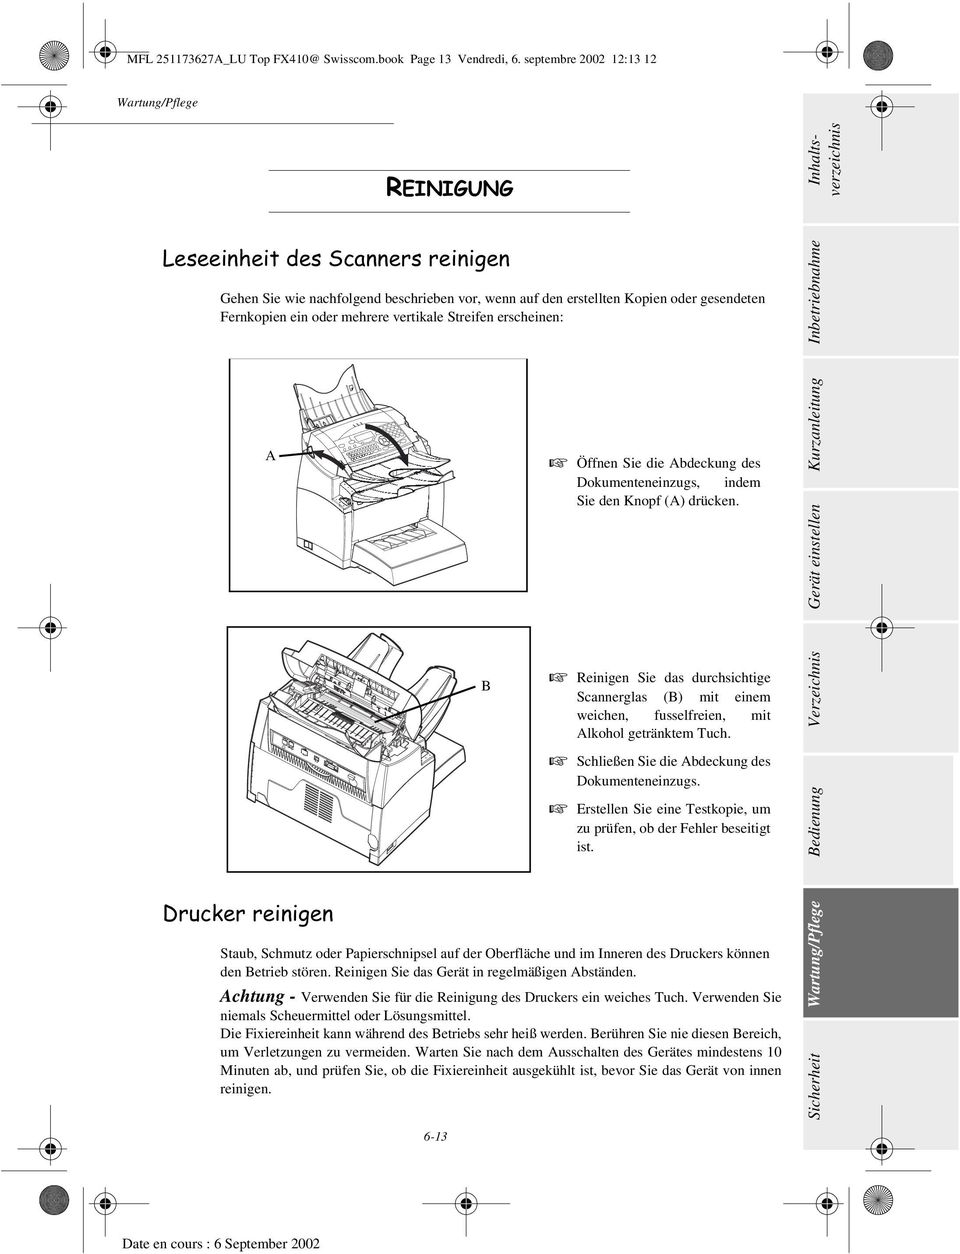 Streifen erscheinen: A 'UXFNHUUHLQLJHQ B + Öffnen Sie die Abdeckung des Dokumenteneinzugs, indem Sie den Knopf (A) drücken.